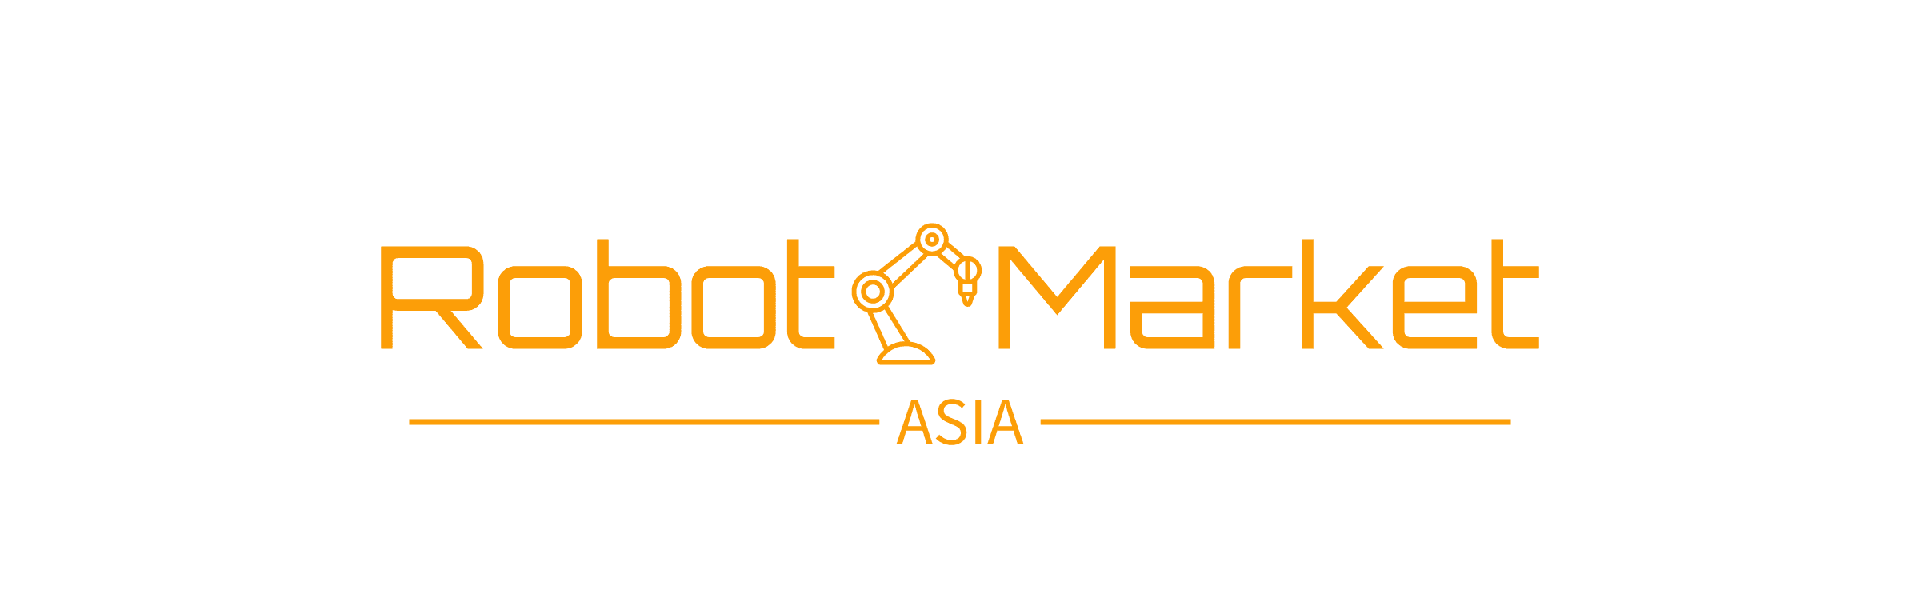 Robot Market Asia